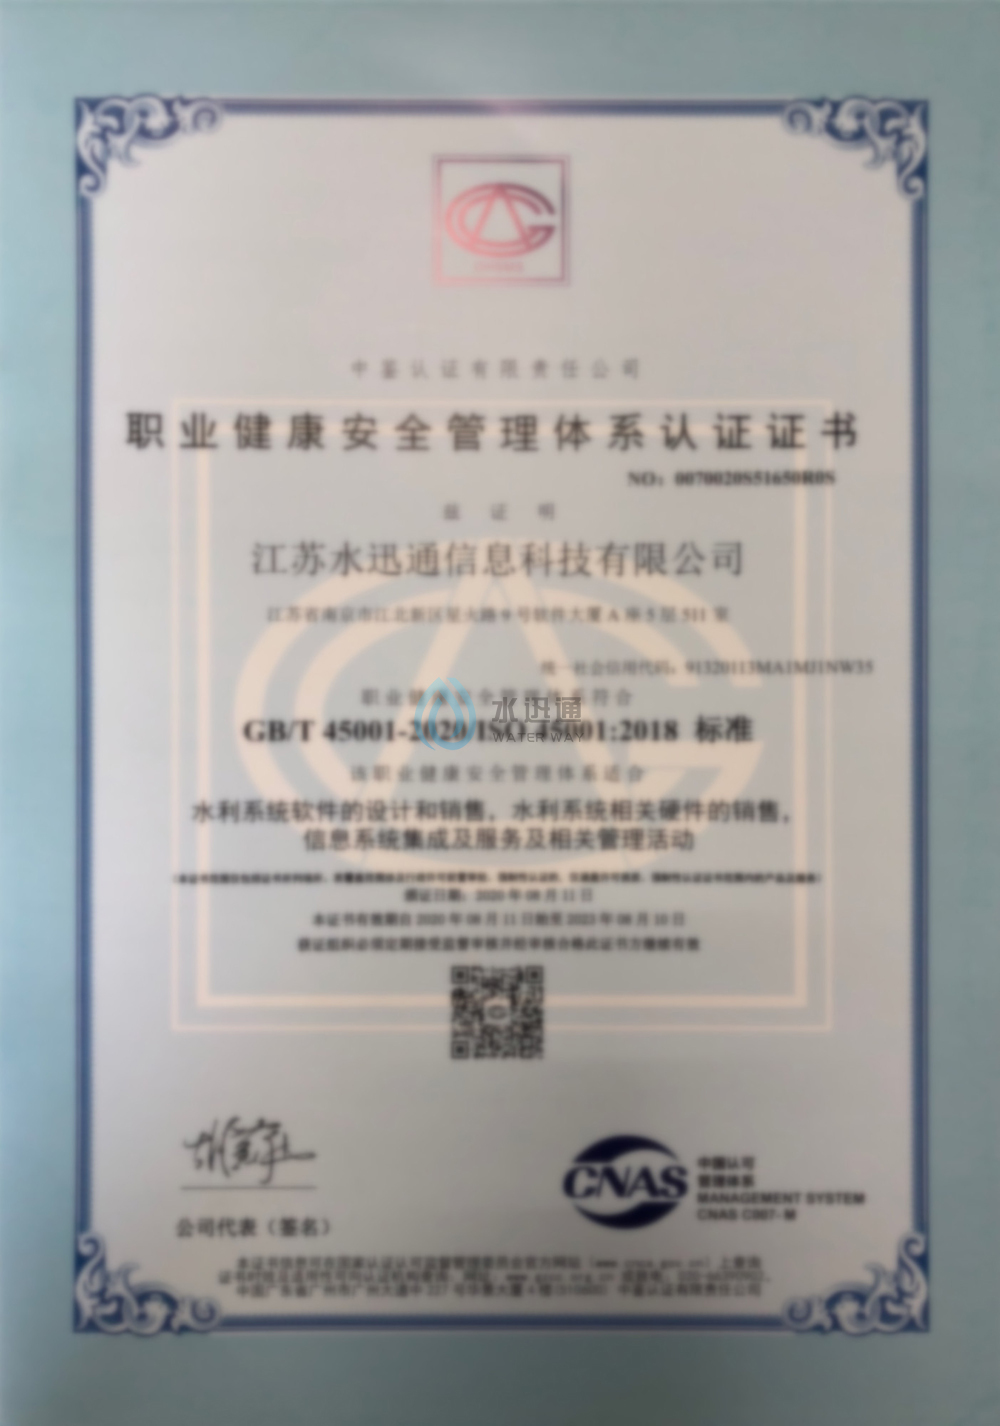 職業健康管理體系認證證書中文版